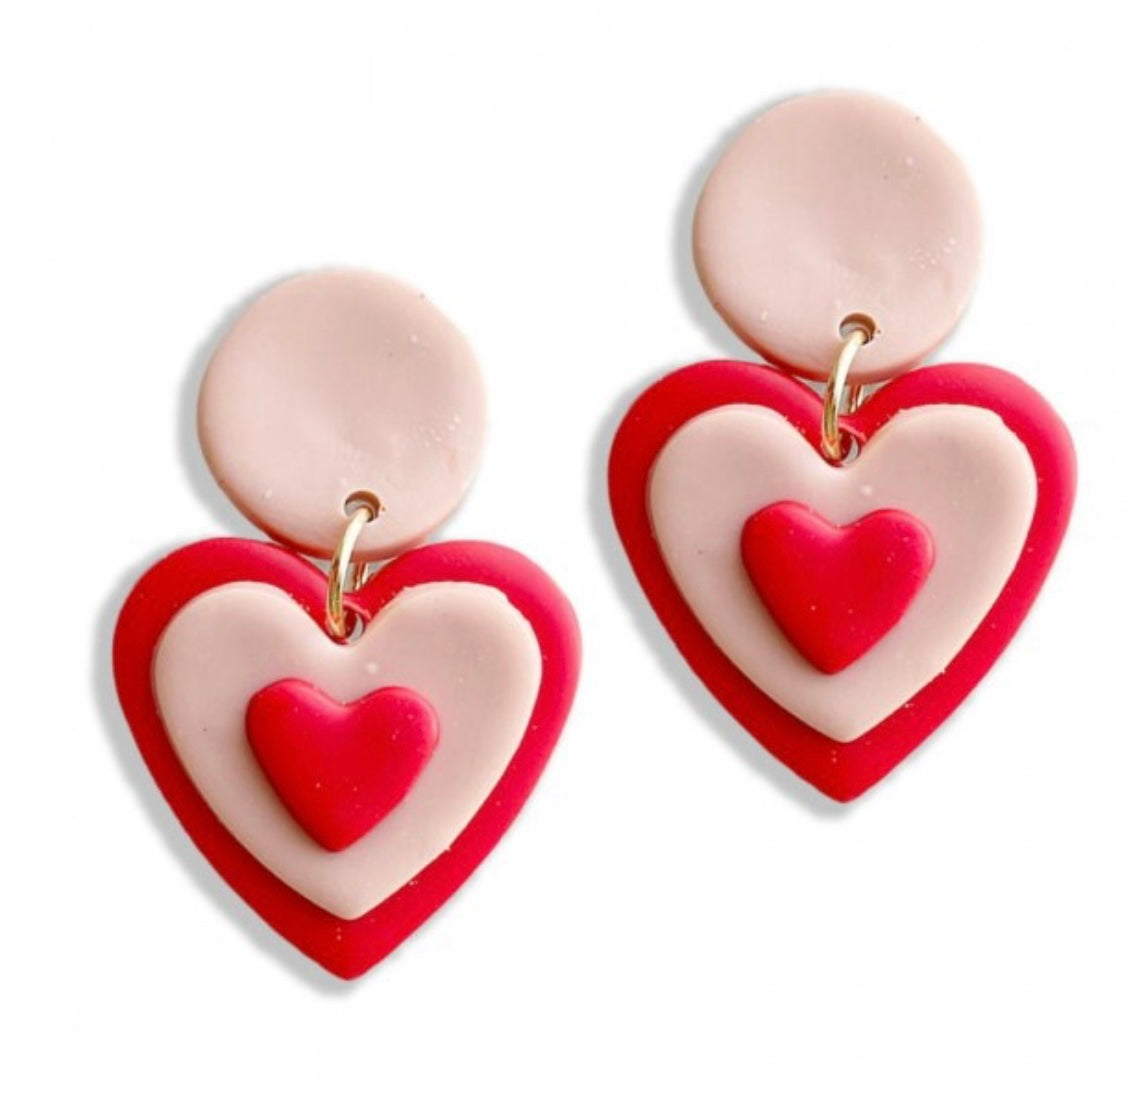 Triple heart earrings